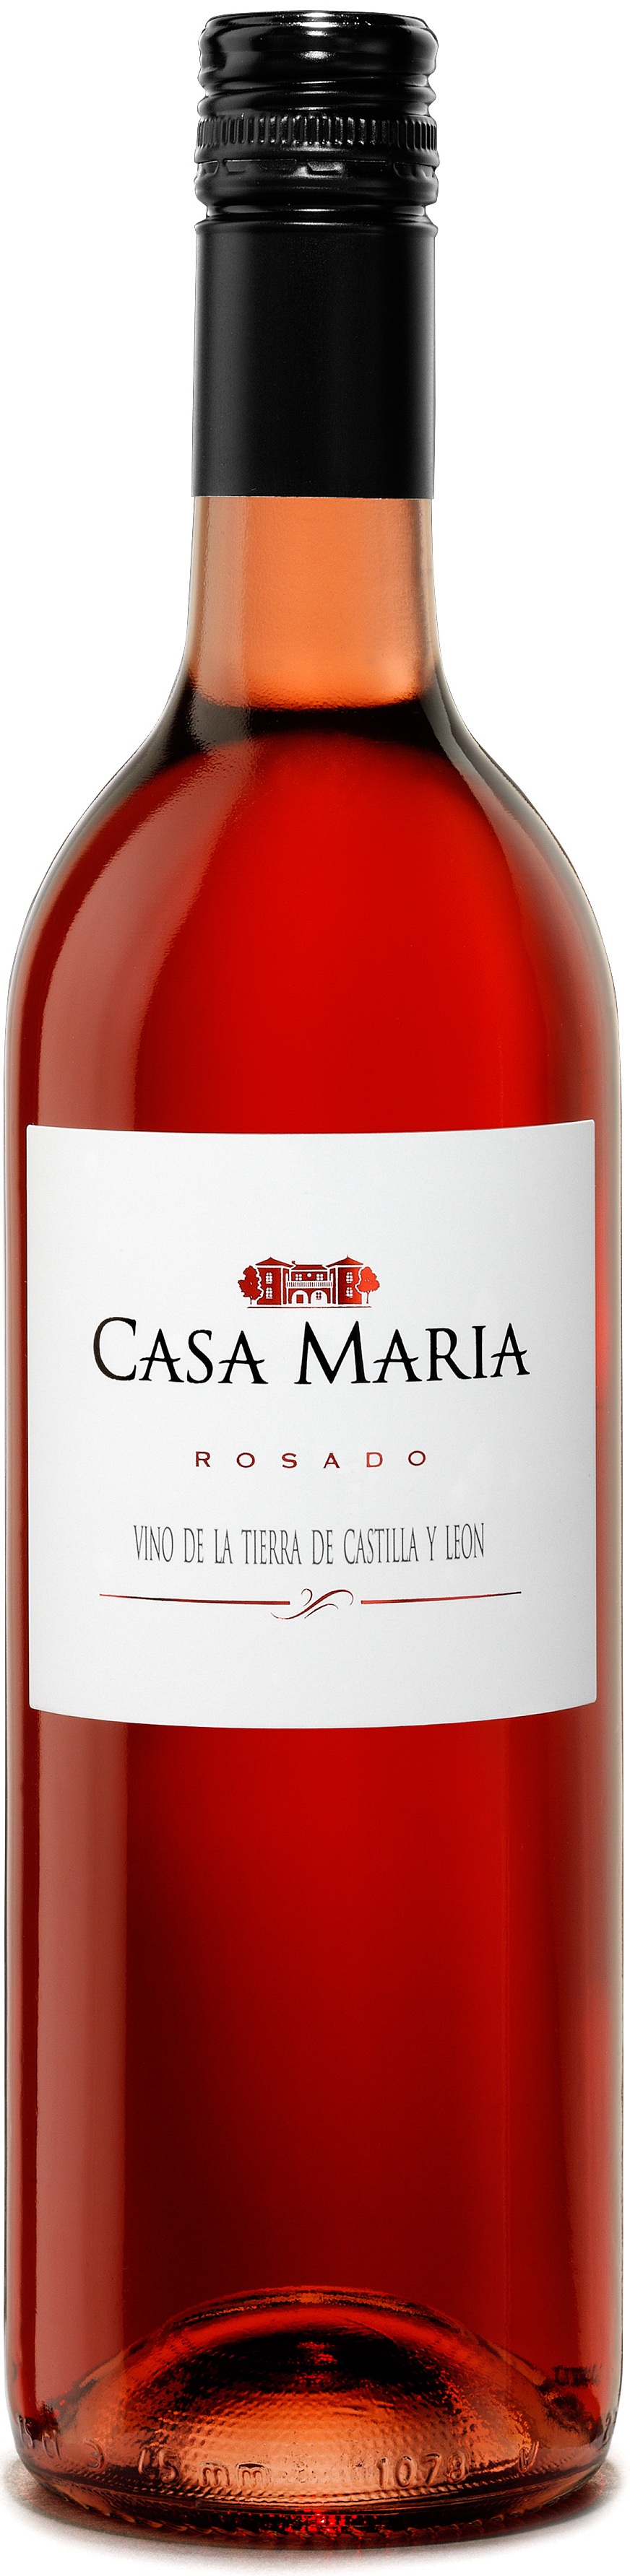 Bild von der Weinflasche Casa María Rosado